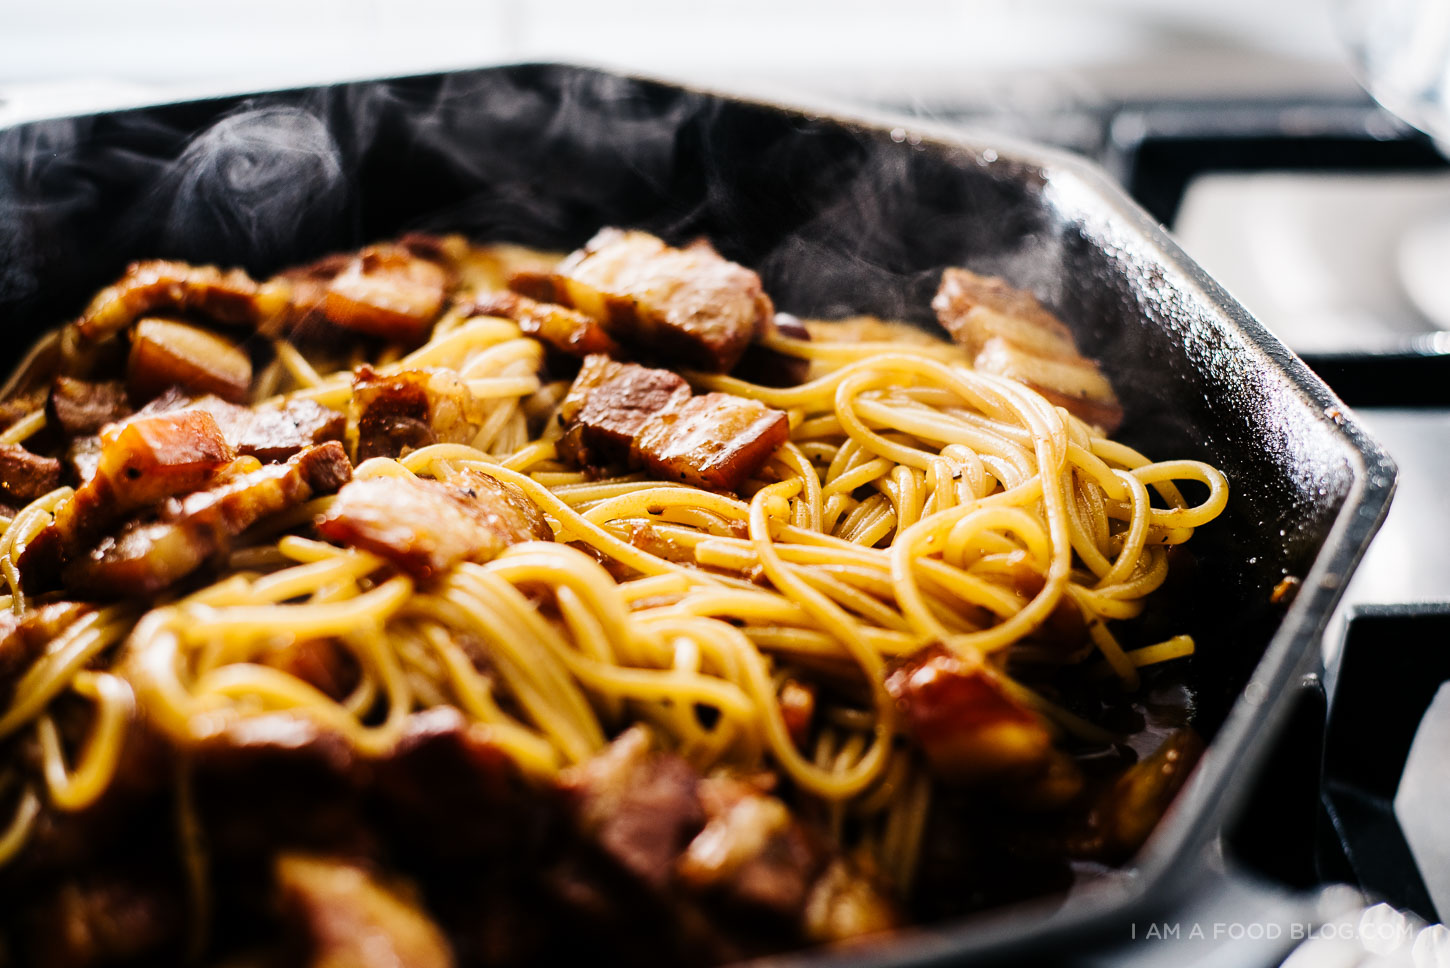 pork belly spaghetti recipe - www.iamafoodblog.com